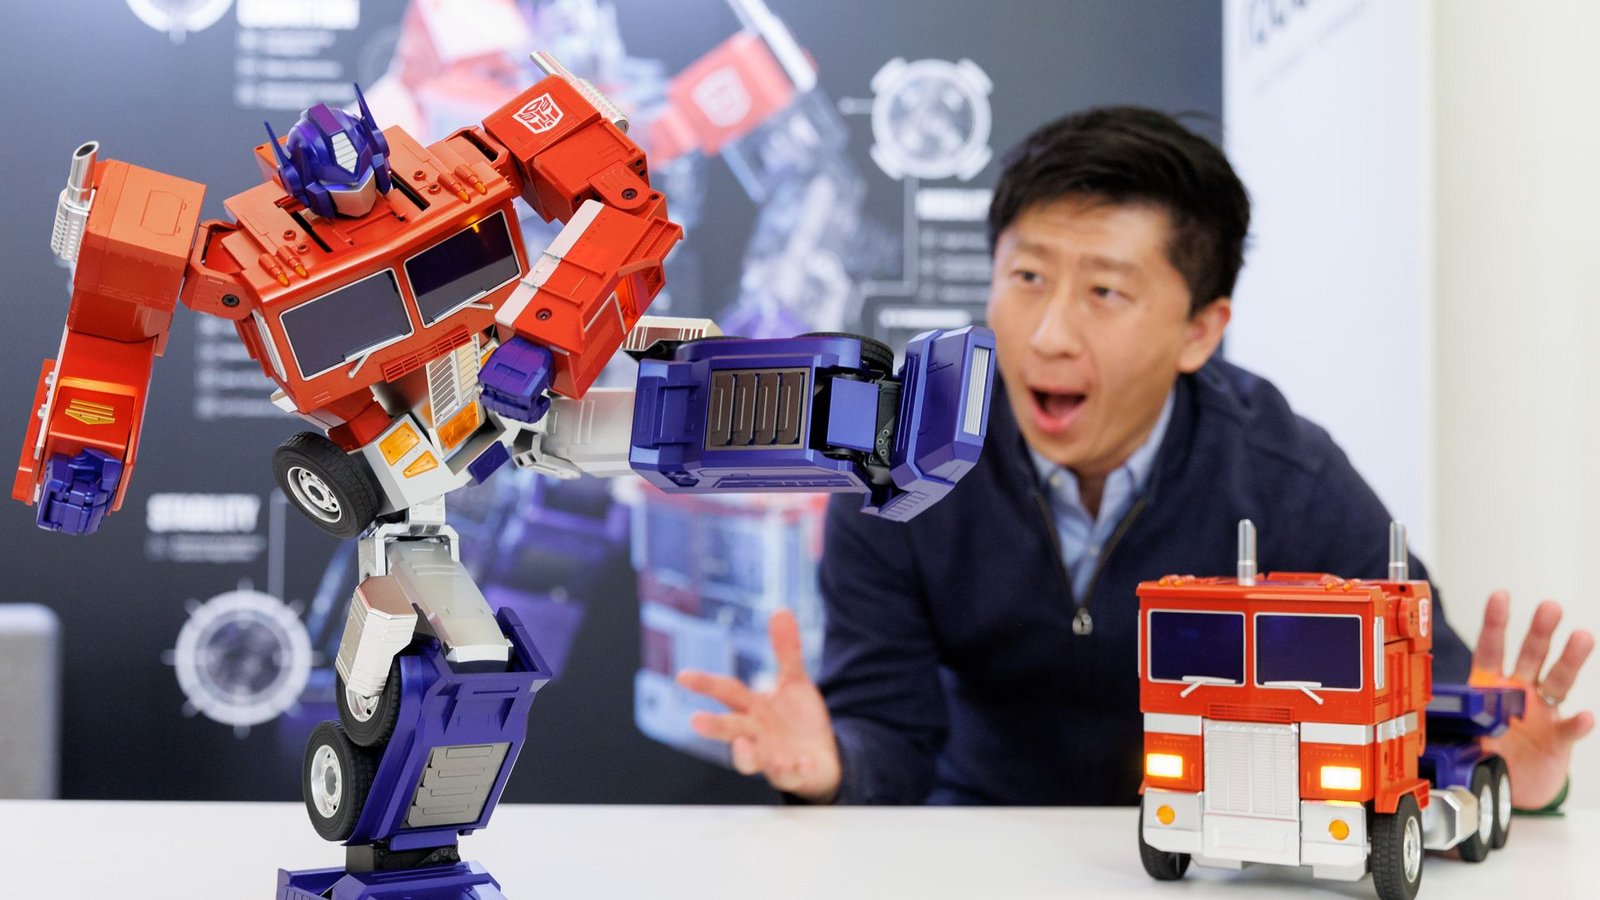 Ein Transformers-Roboter "Optimus Prime" des Unternehmens Robosen in Nürnberg auf der Spielwarenmesse.Foto: Daniel Karmann/dpa